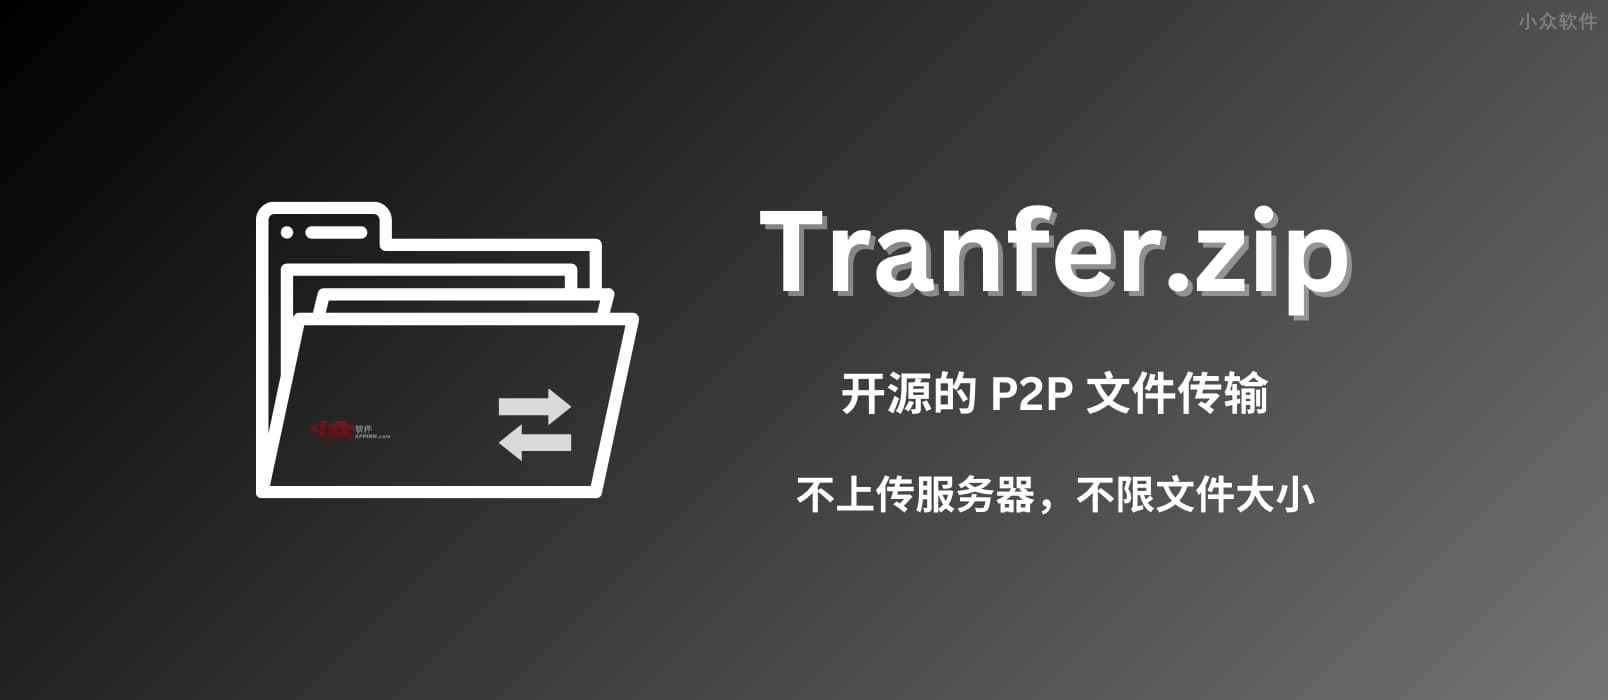 免费、开源、P2P、不限量，用 Transfer.zip 传输任意大小文件，不限速